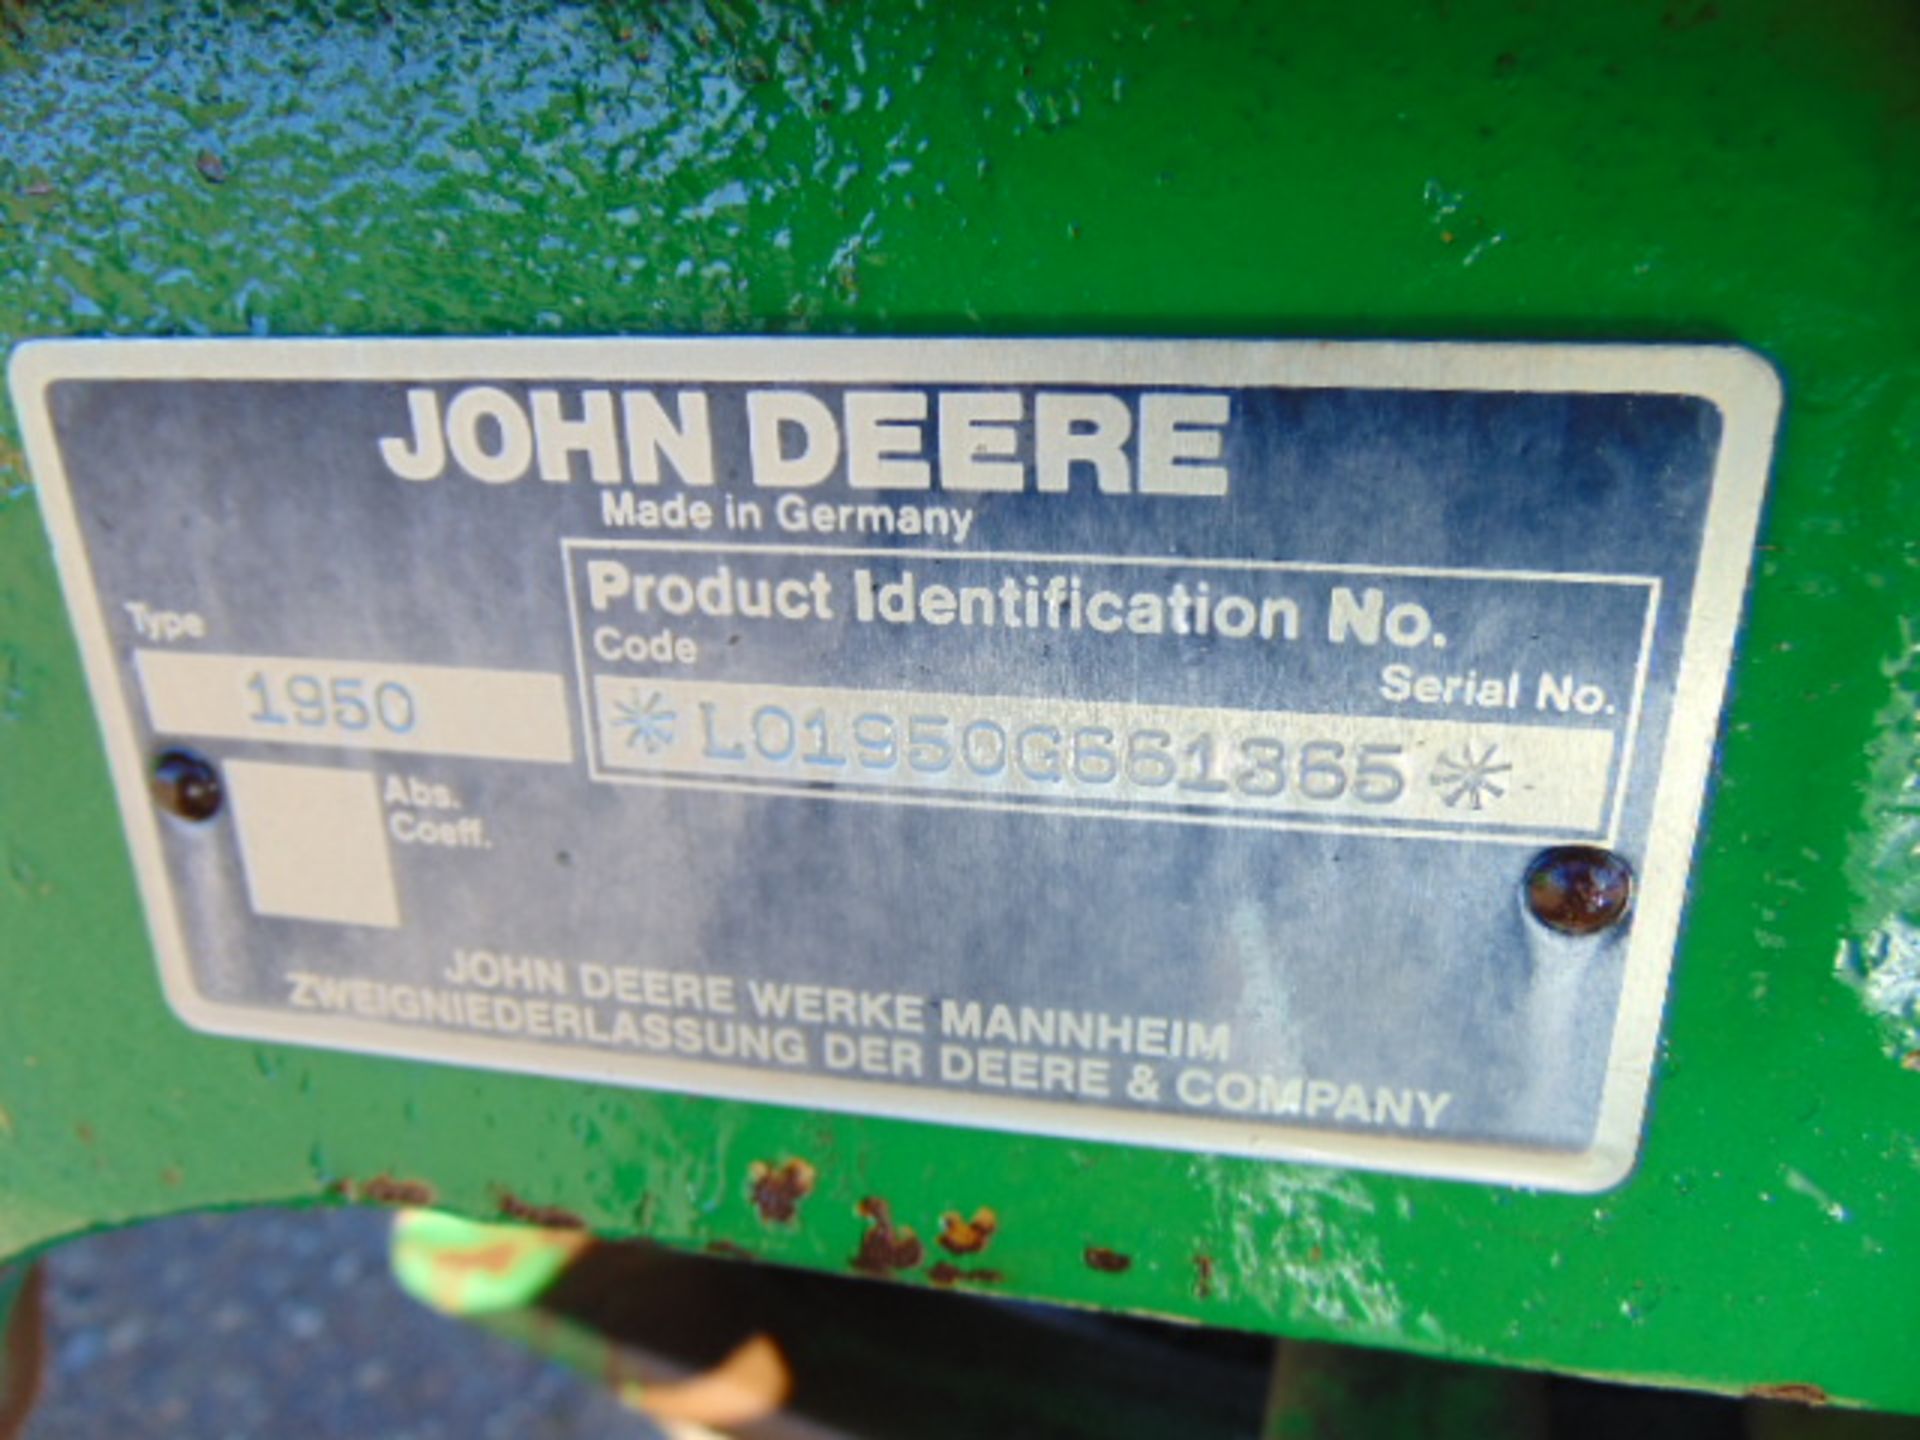 John Deere 1950 2WD Tractor - Image 17 of 17